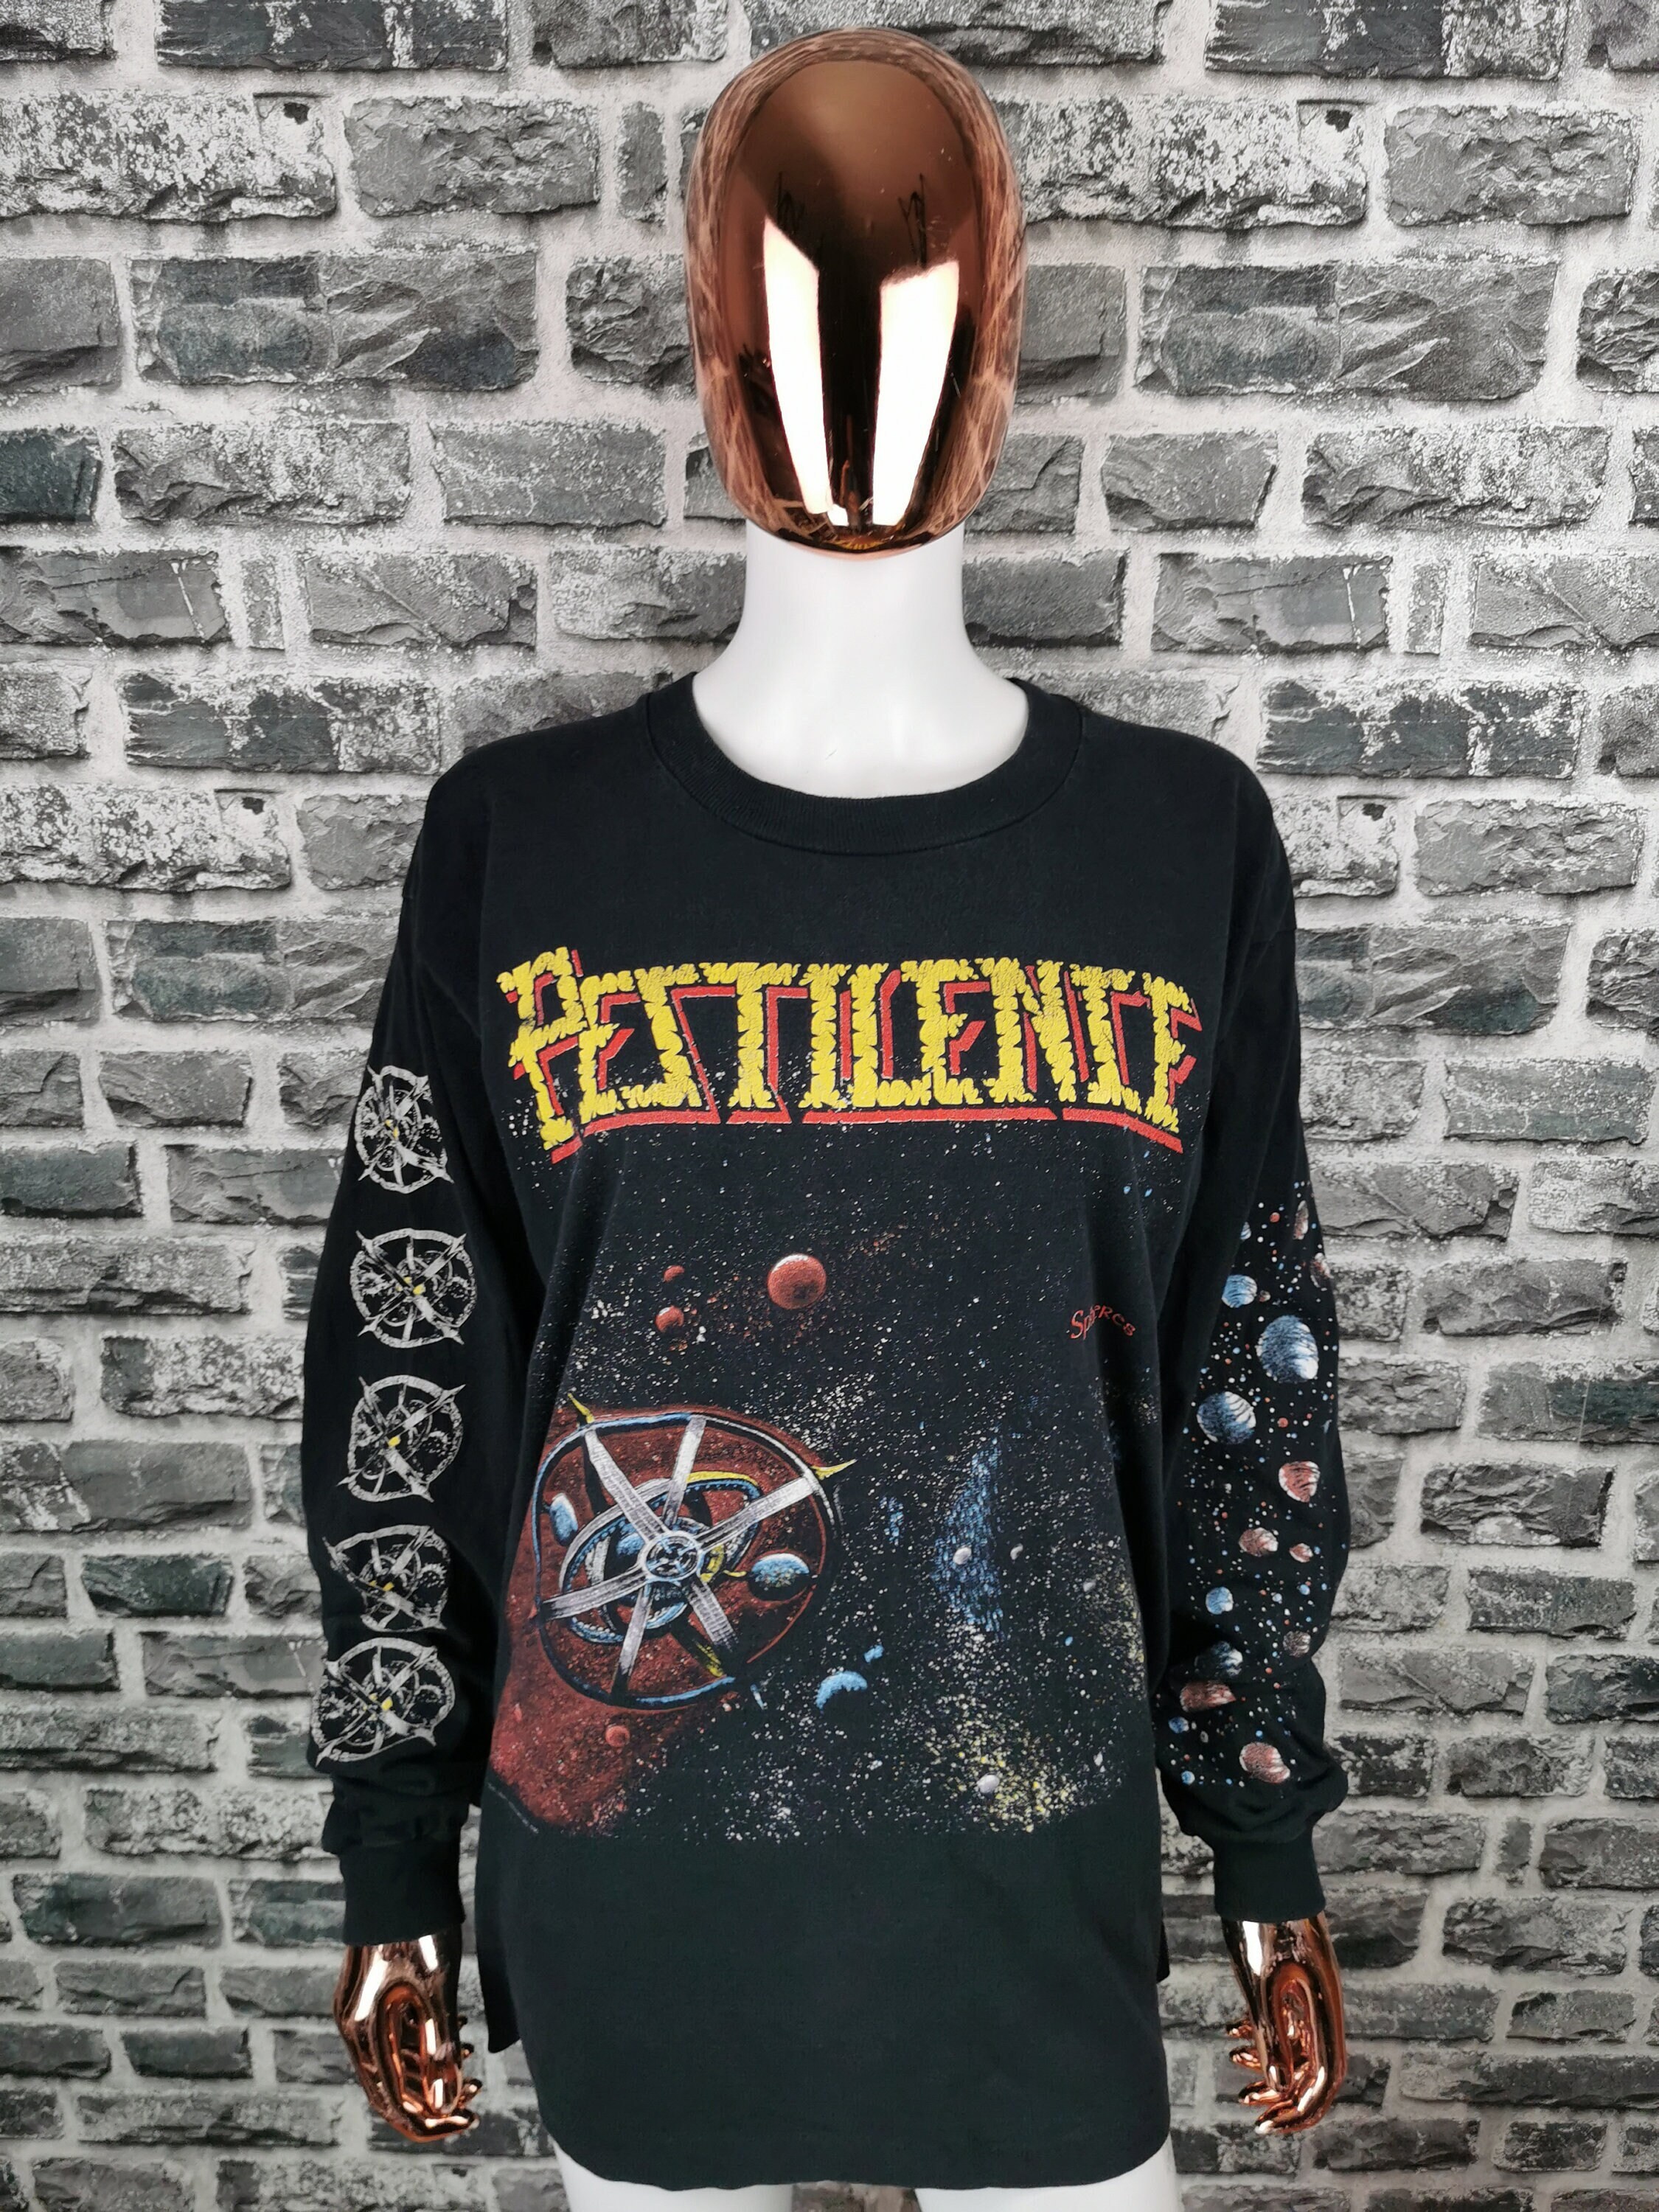 Black Pestilence 'Spheres' T-Shirt NEW & OFFICIAL!